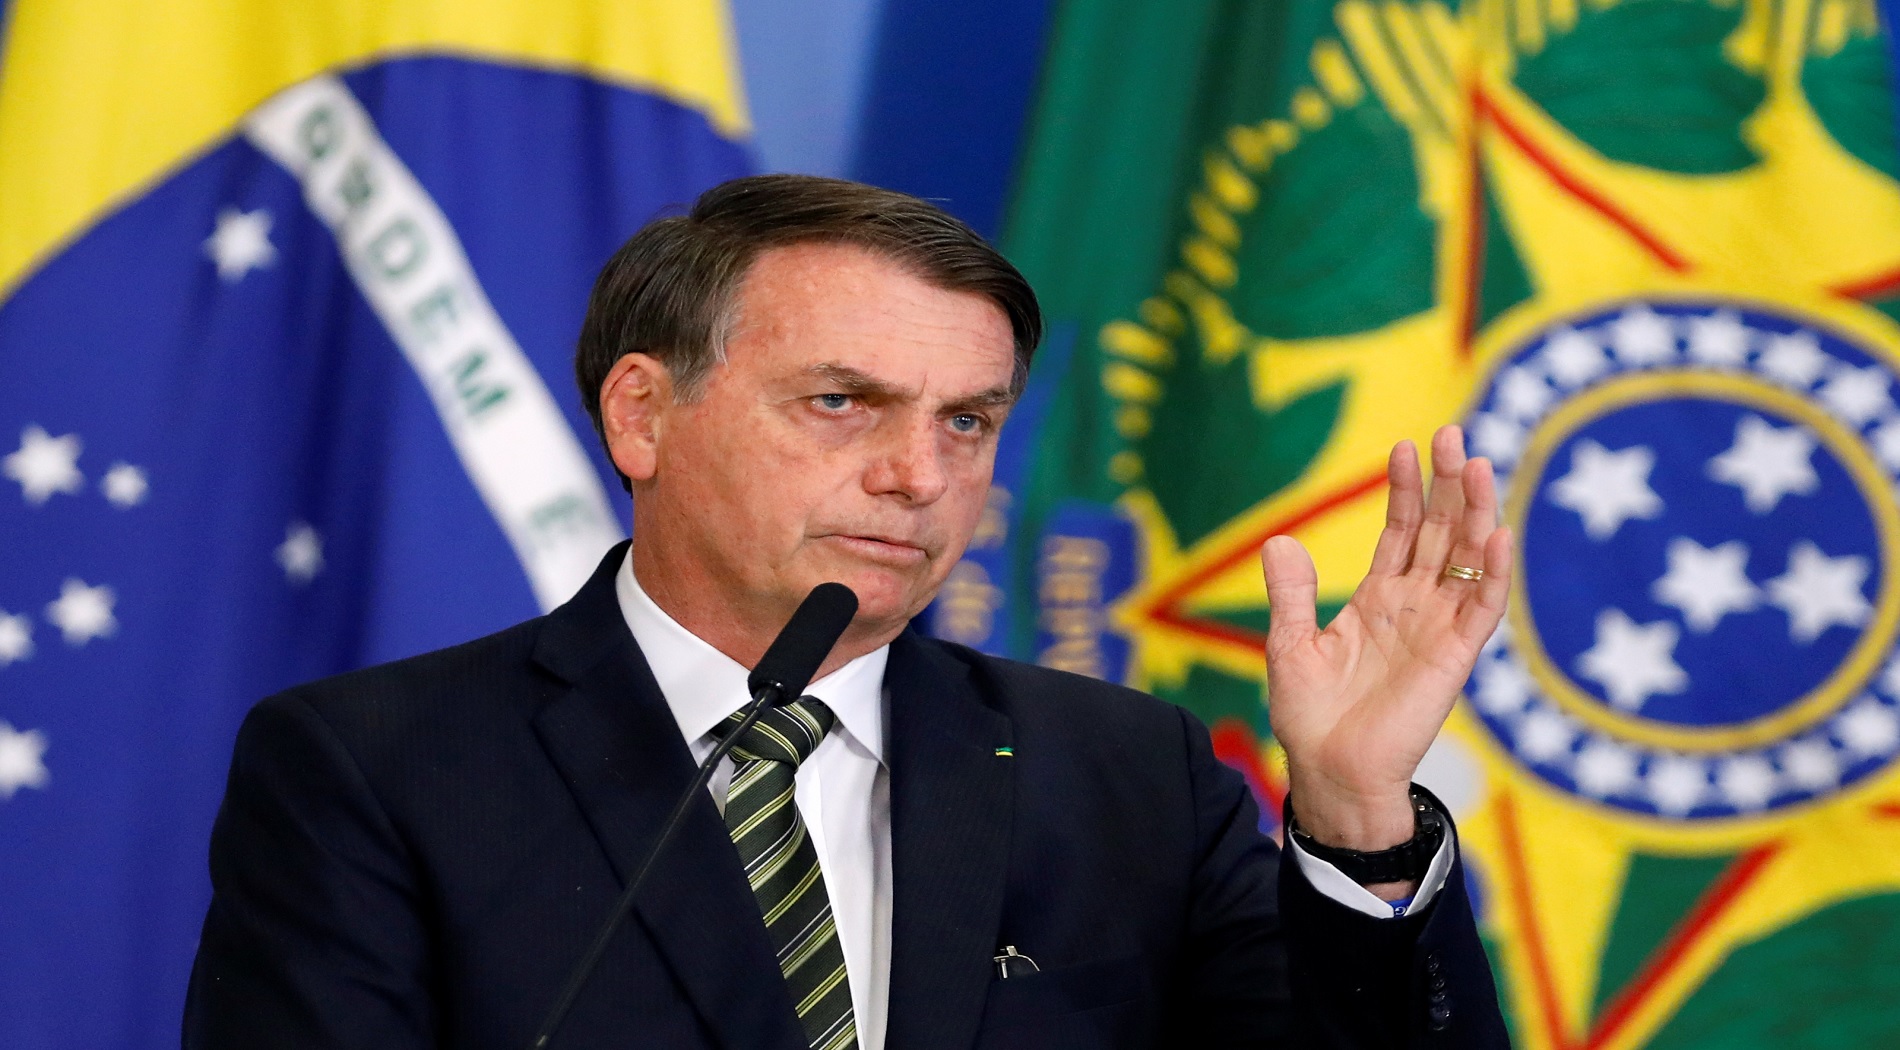 “Οι καραντίνες θα μπορούσαν να προκαλέσουν χάος” υποστηρίζει ο Πρόεδρος της Βραζιλίας